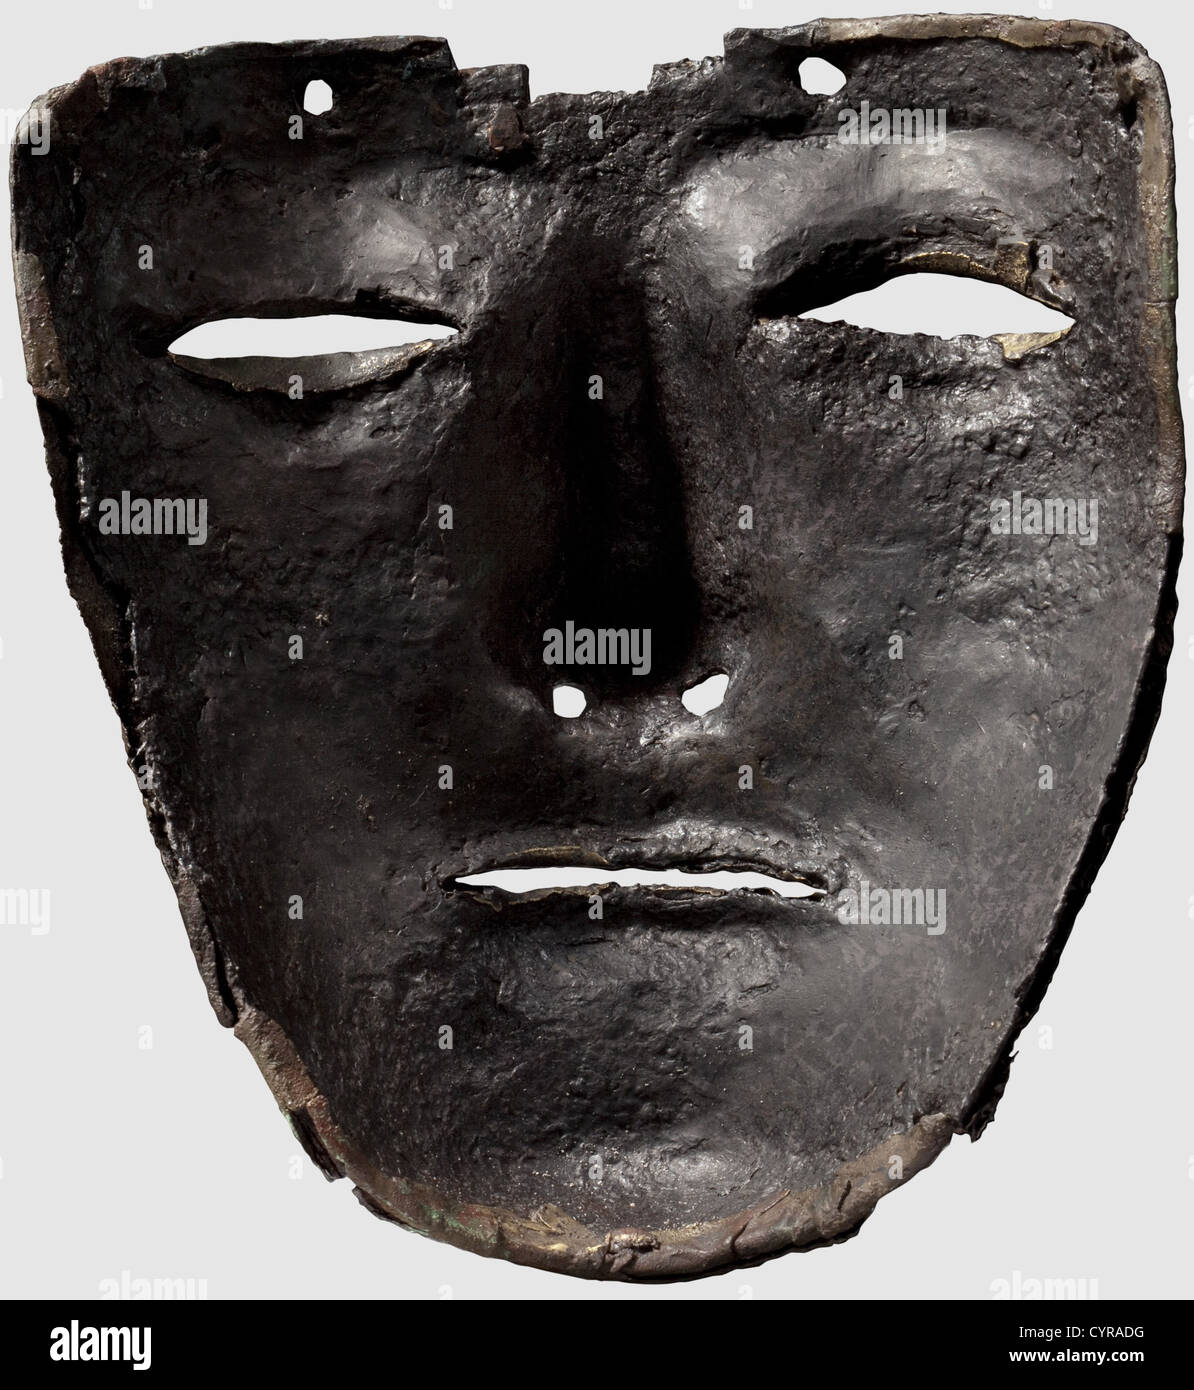 Eine römische Kalkriese Maske aus einem Kavalleriehelm wahrscheinlich vom Typ Weiler/Koblenz-Bubenheim, 1. Jahrhundert n. Chr. Schmiedeeisen überzogen mit verzinntem Messingblech, das bartlose Gesicht mit Augen-, Nasenloch- und Mundöffnungen und in beträchtlichem Detail modelliert, vier große Löcher auf der Stirn und zwei ähnliche unter dem Kinn, das Stirnband in Form Einer Blechöse mit einer vernieteten Kupferöse, und am rechten Rand eine aufgeschlagen Inschrift 'TVR PAVLI / FUSCI' = entweder 'Paulus' Horse Truppe, Eigentum von Fuscius', oder 'Paulus Fuscius' Horse Truppe'(turma,h,Additional-Rights-Clearences-not available Stockfoto